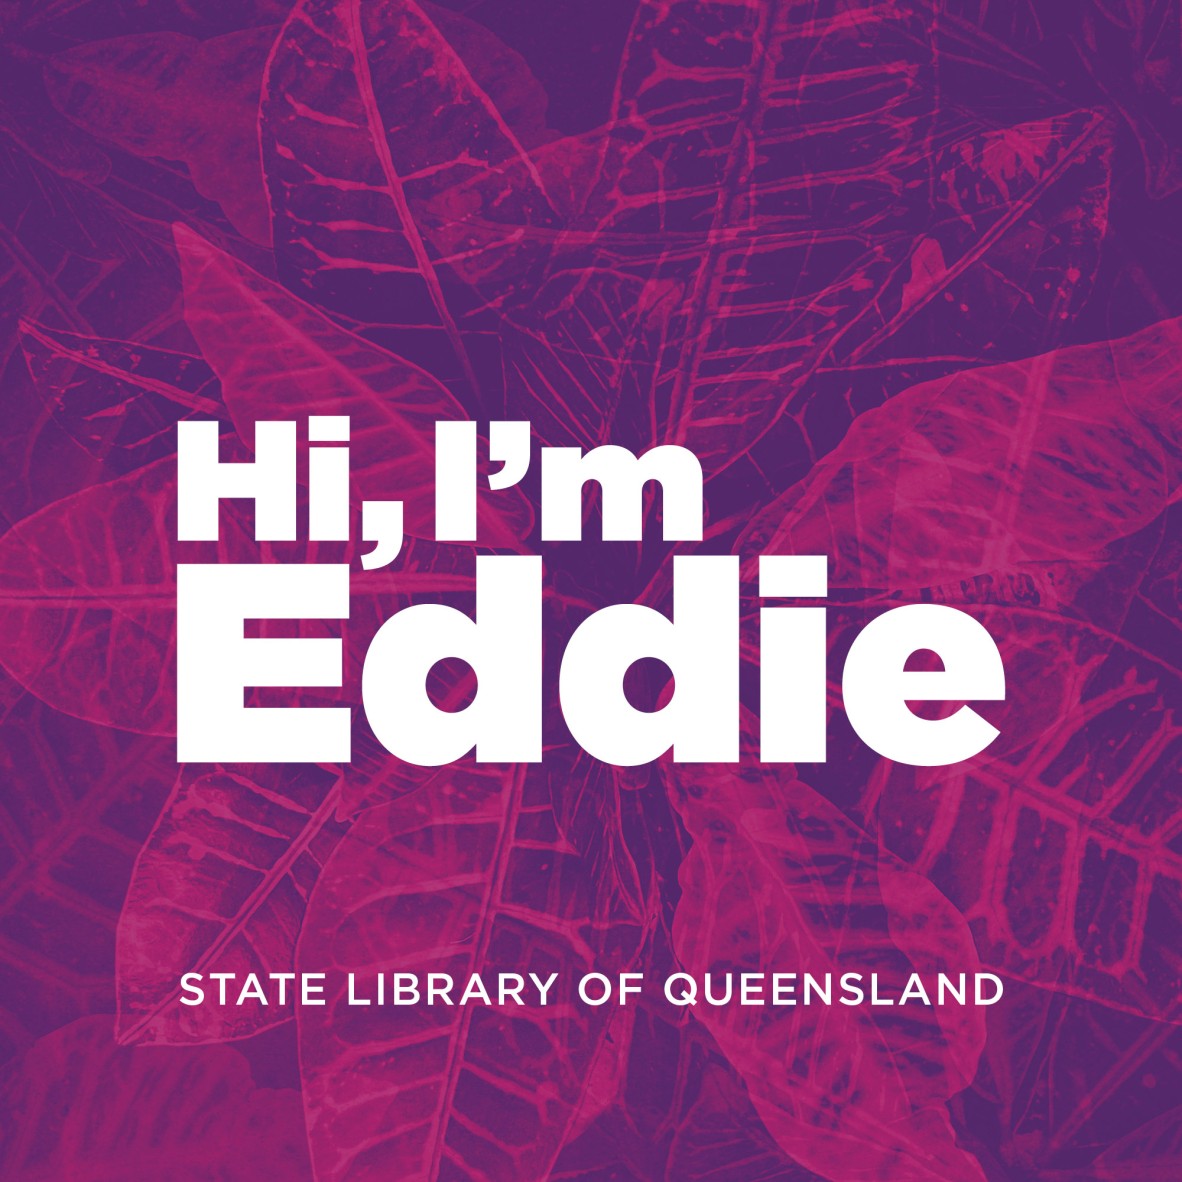 Hi Im Eddie pink with SL logo